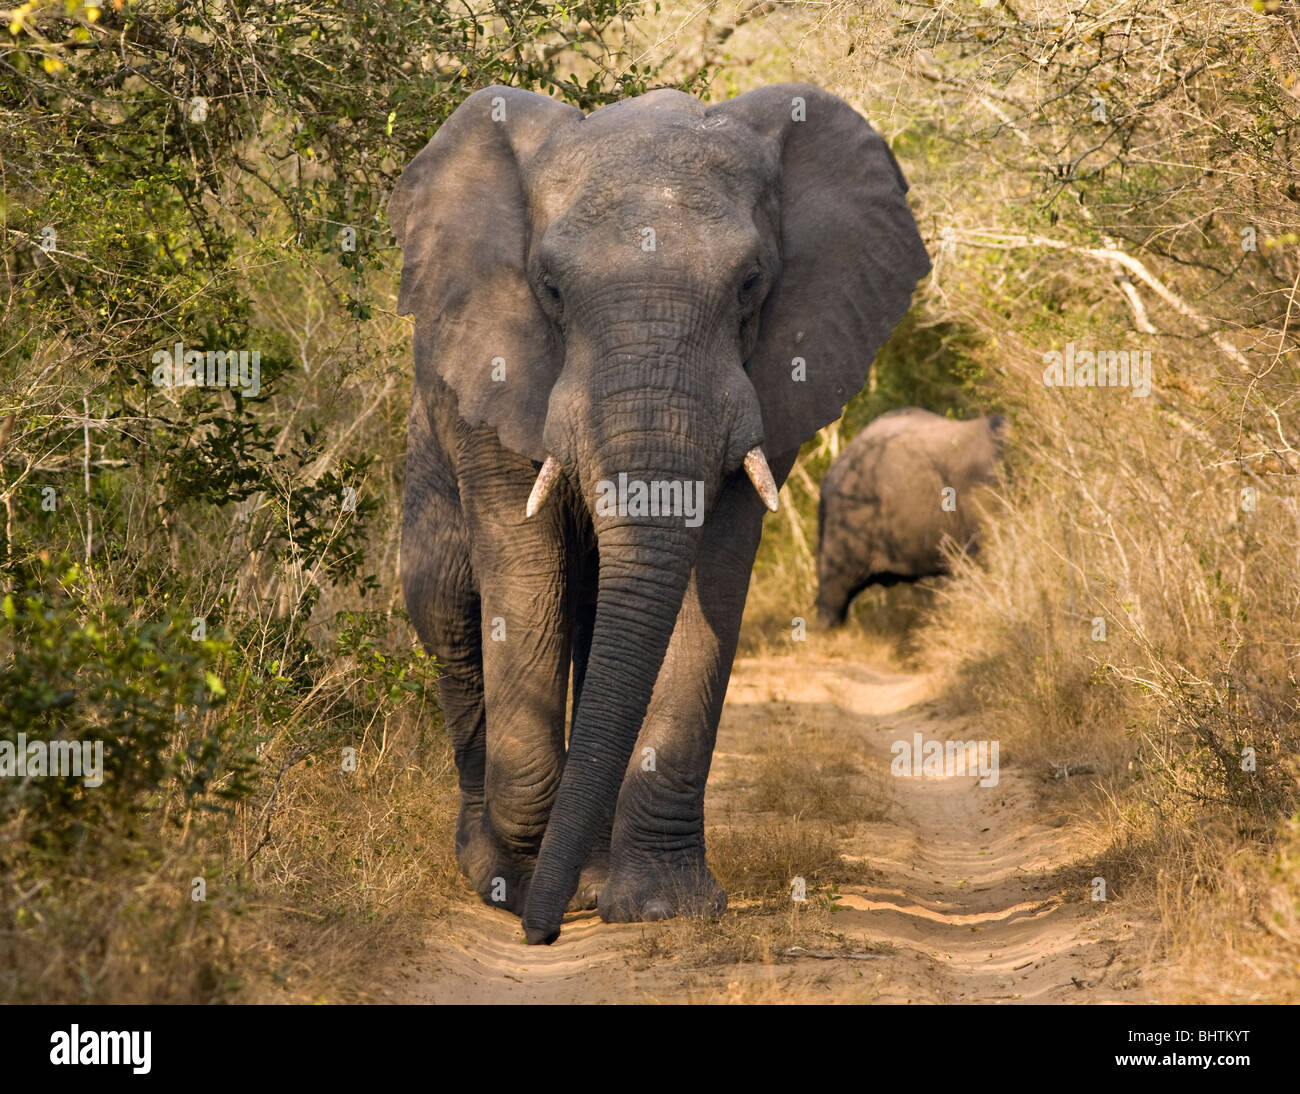 Un toro de elefante africano (loxodonta africana), caminando por un estrecho camino de tierra. Foto de stock